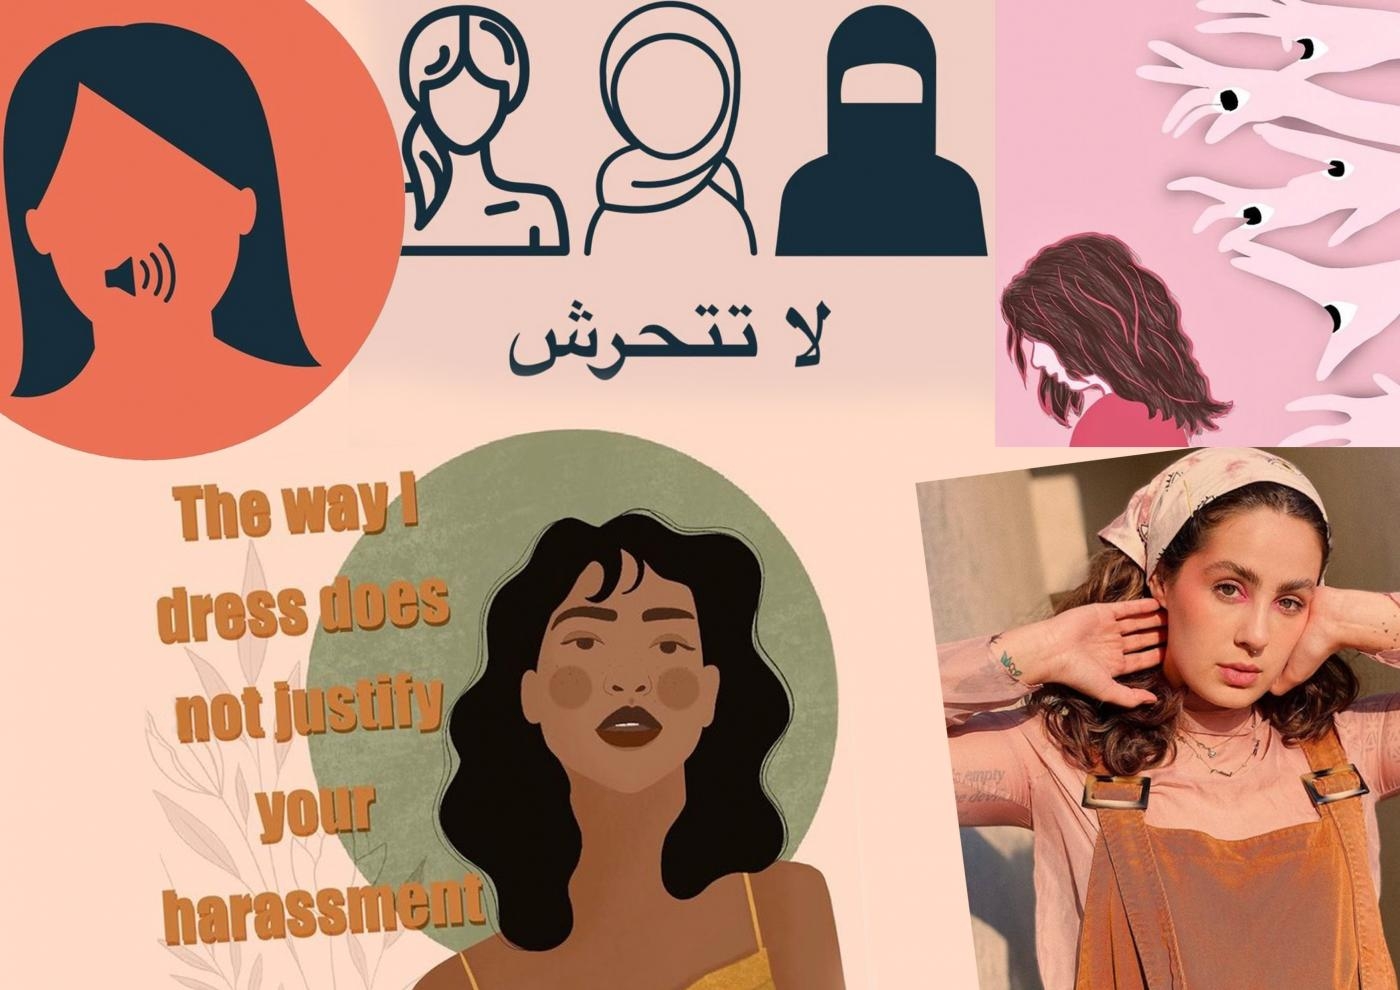 Des femmes sensibilisent au harcèlement sexuel au Koweït (capture d’écran/Instagram/Illustration de Mohamad Elasaar)